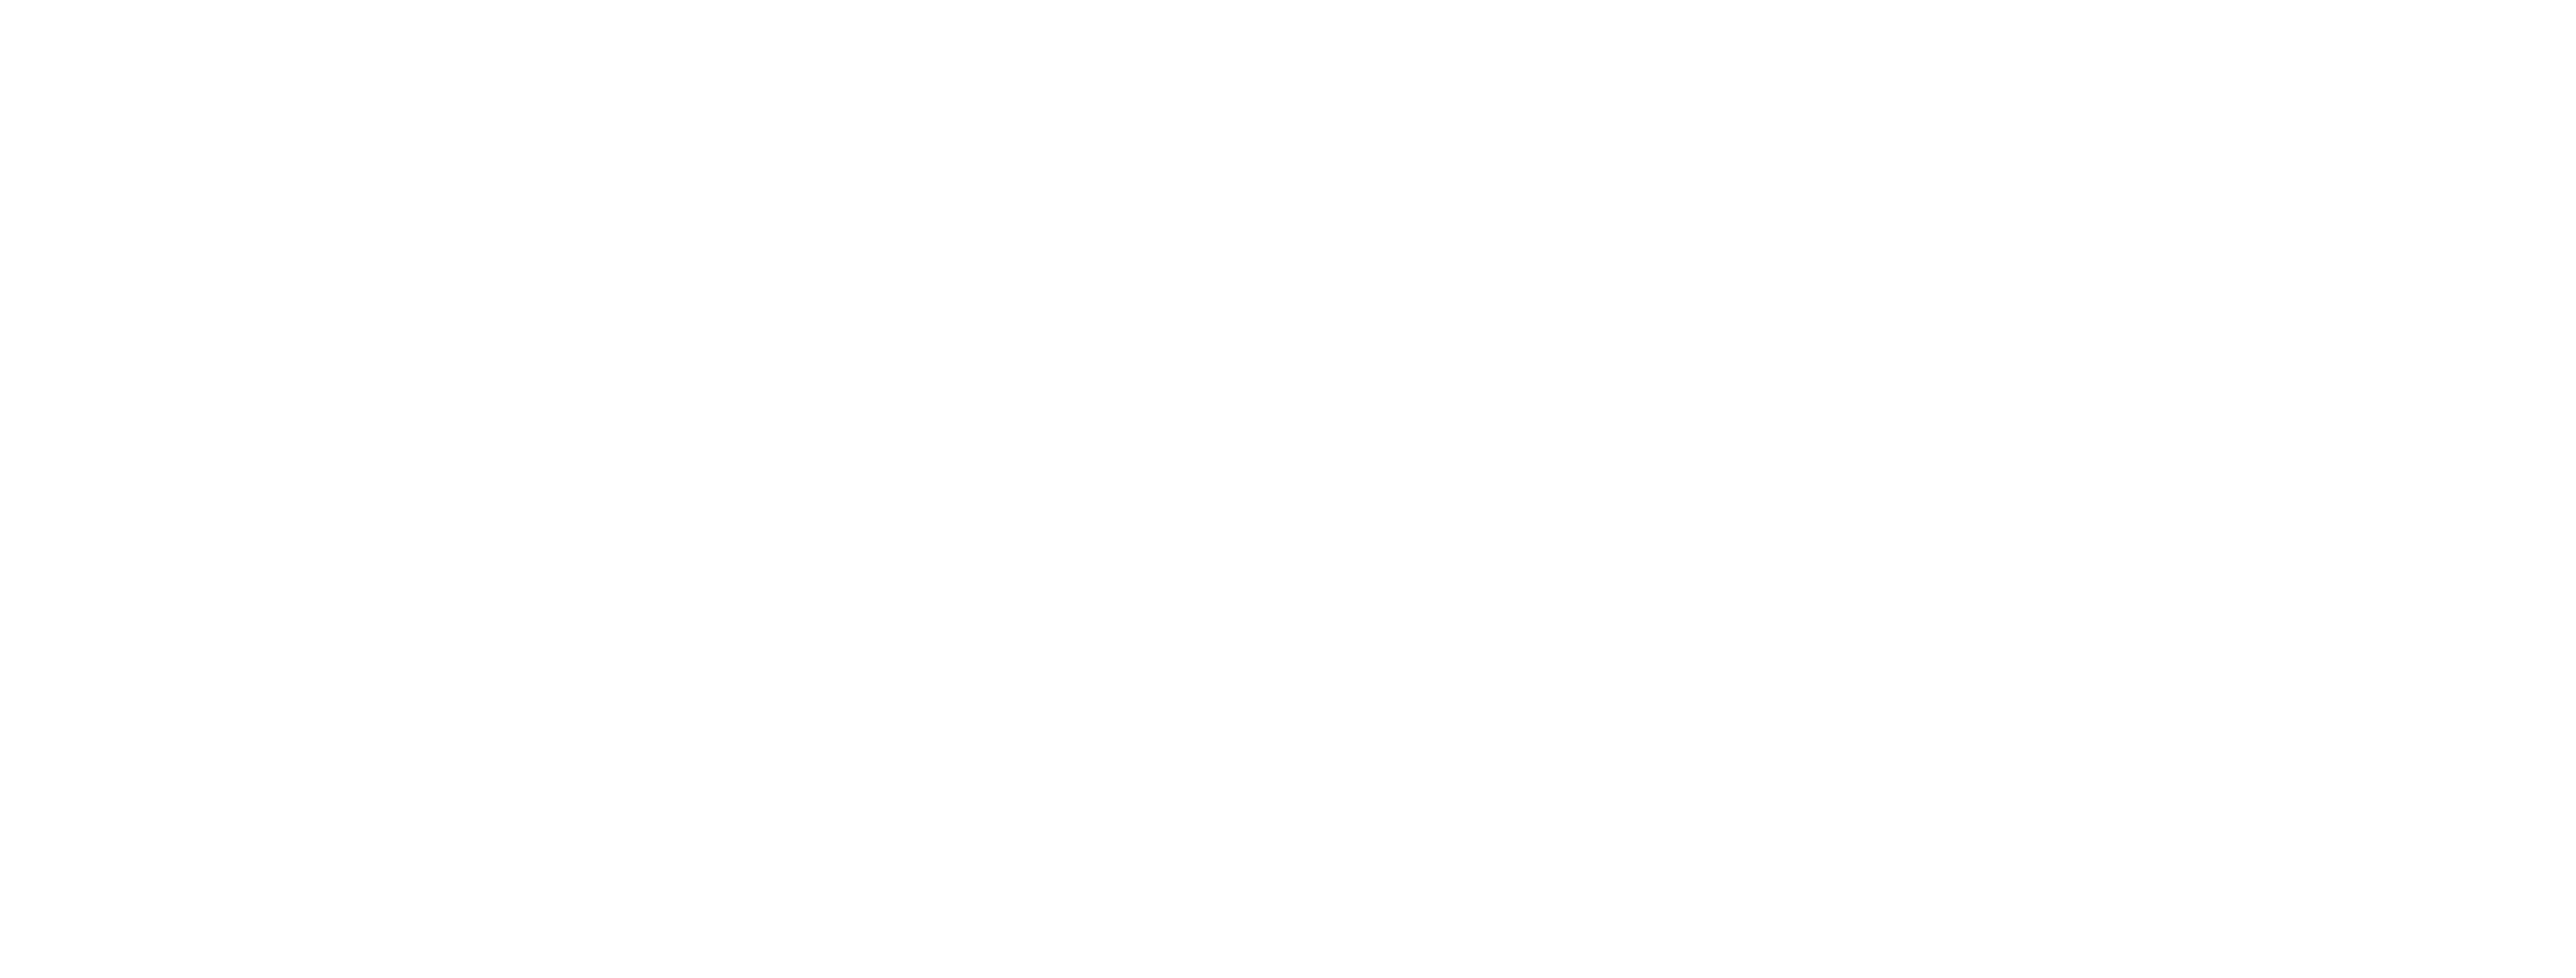 logo da Secretaria de Cultura e Economia Criativa do GDF